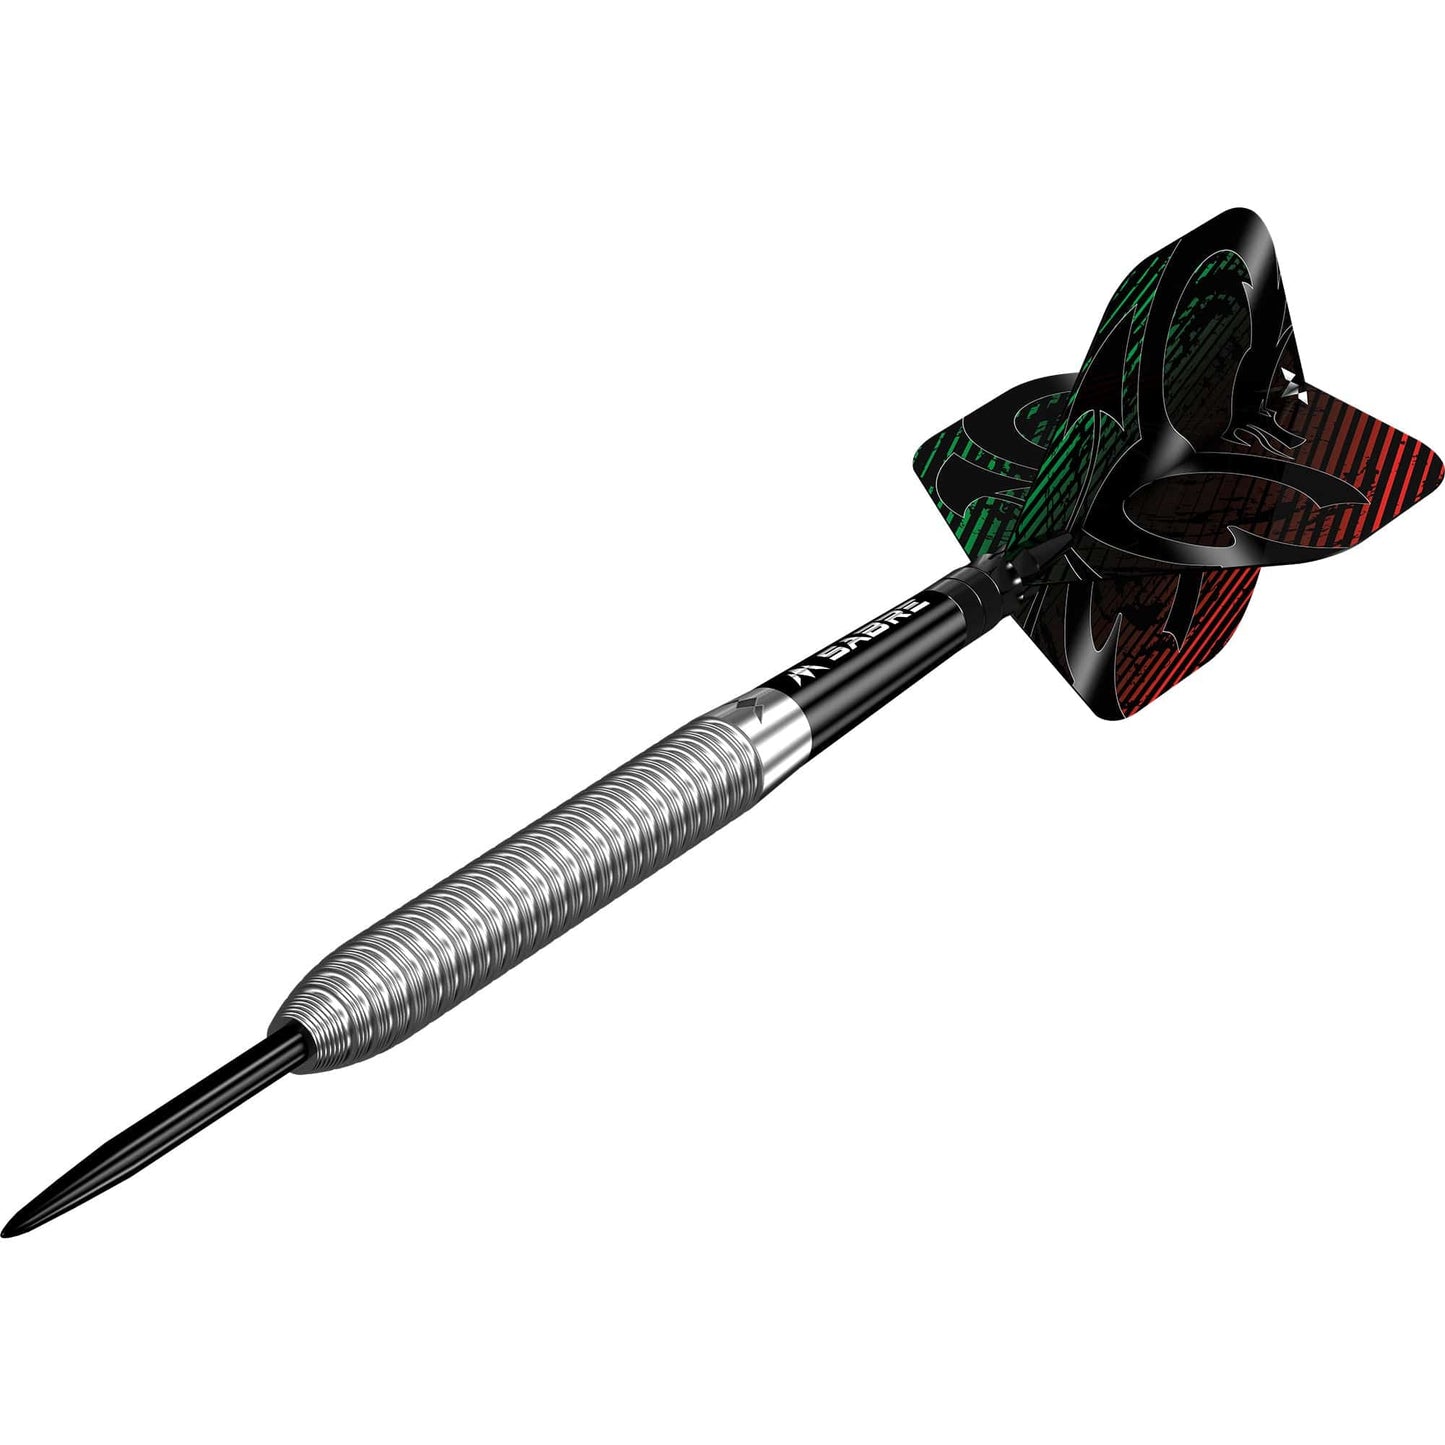 Mission Callum Goffin Darts - Steel Tip - 90% - Micro Grip